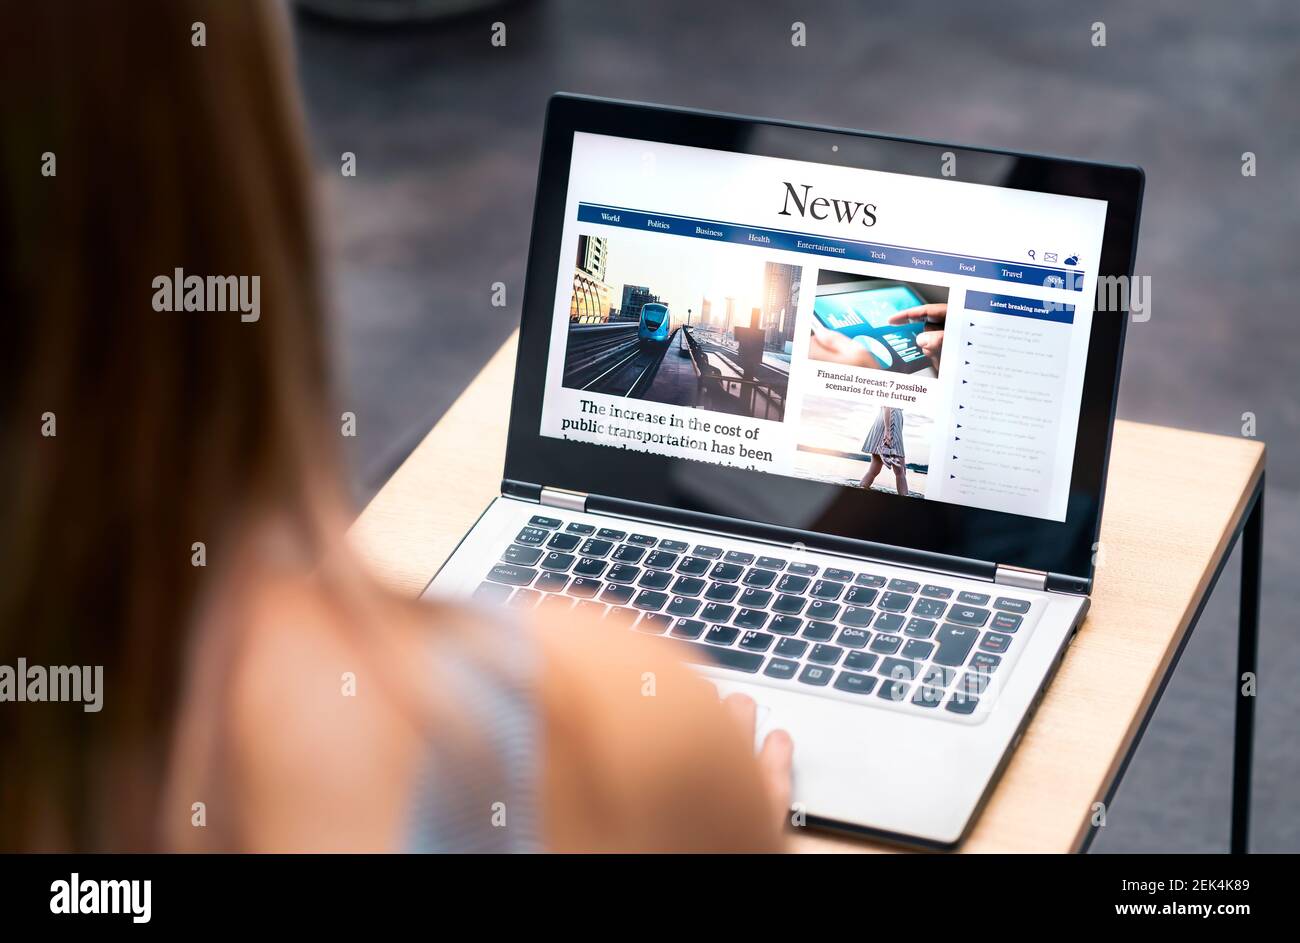 News-Website in Laptop-Bildschirm mit Online-Artikel und Überschrift. Frau liest Zeitung oder Zeitschrift mit Computer. Digitales Webpublikationsportal. Stockfoto